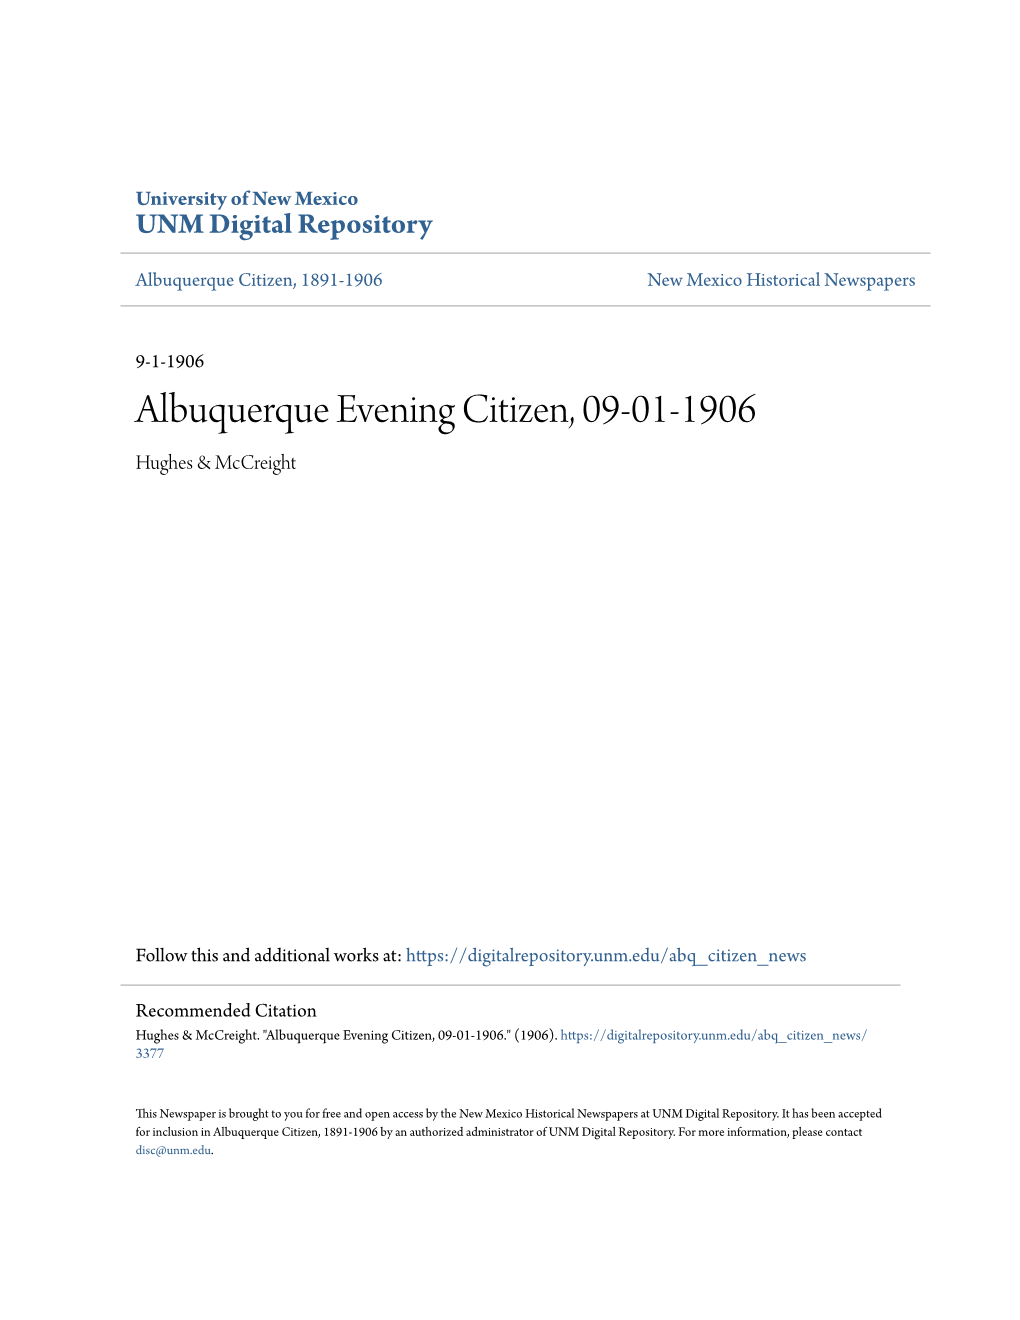 Albuquerque Evening Citizen, 09-01-1906 Hughes & Mccreight